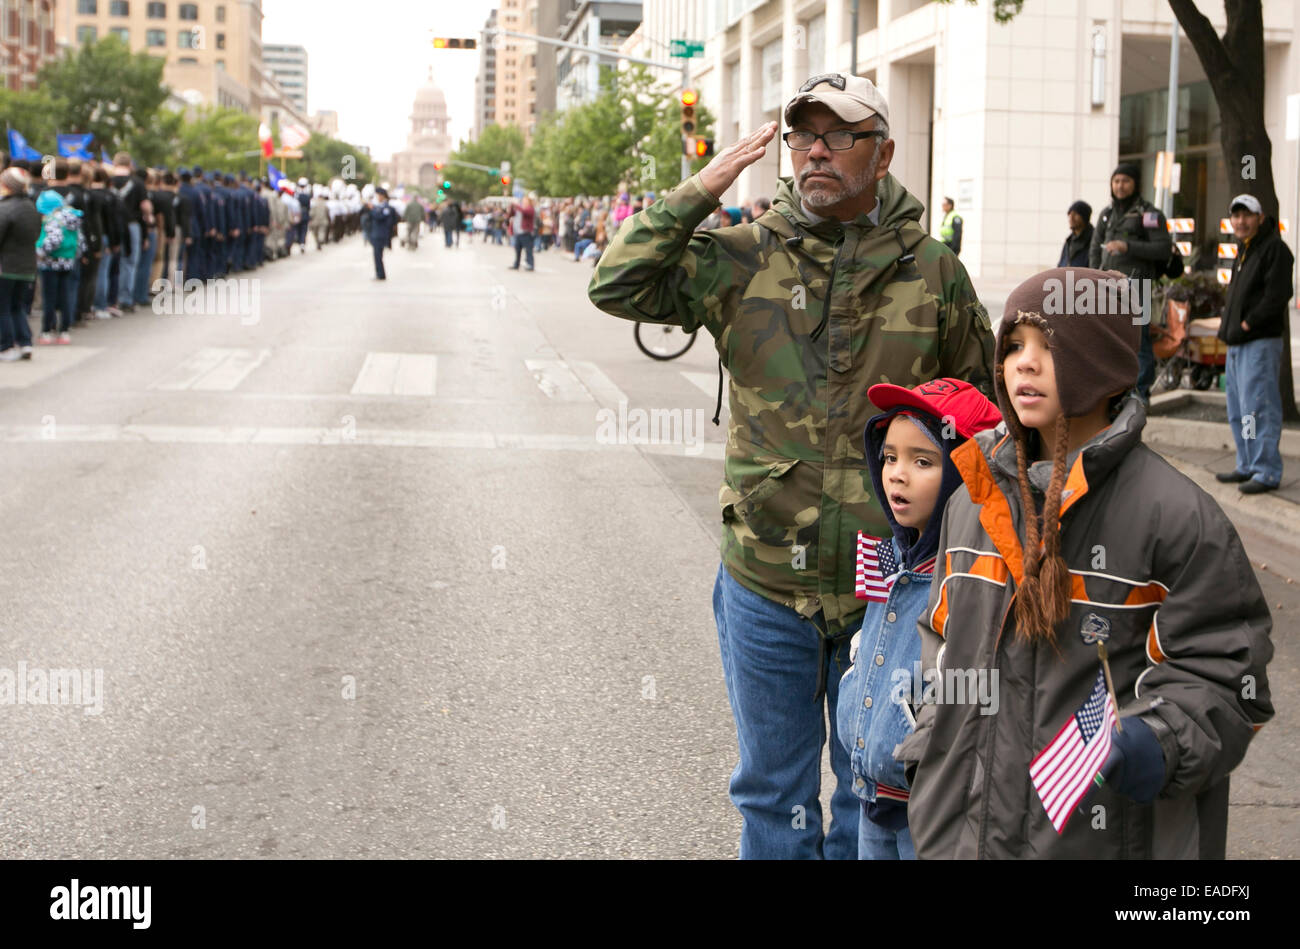 Gönnern Line-up auf Bürgersteig auf der Congress Avenue in Austin, Texas, Unterstützung bei der jährlichen Veteran Tagesparade zu zeigen Stockfoto